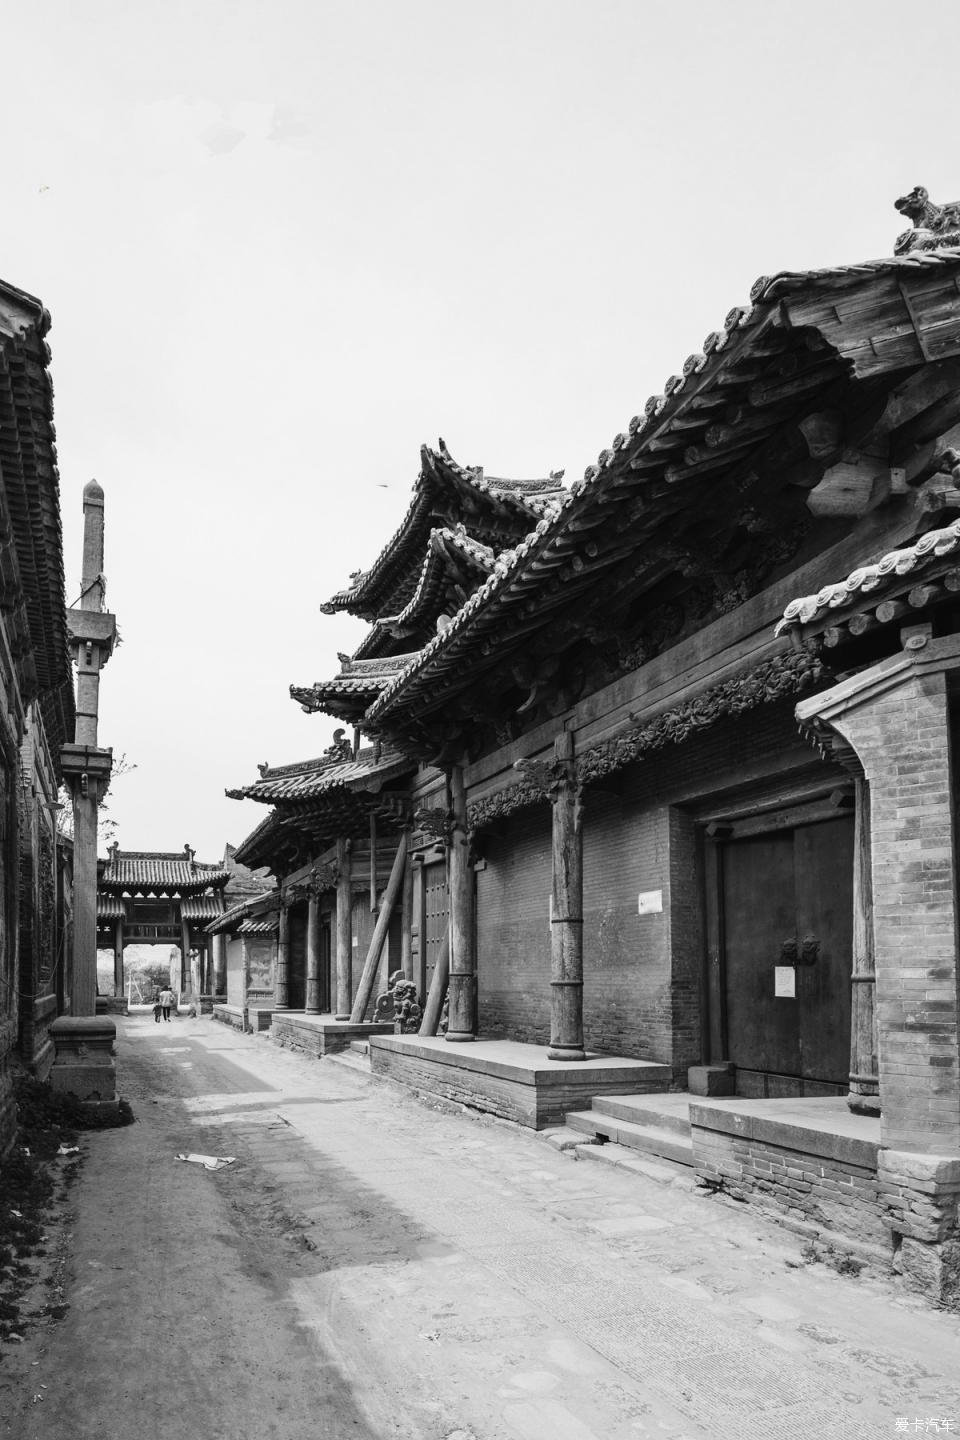 【图】游览汾城古建筑,感受时代沧桑感